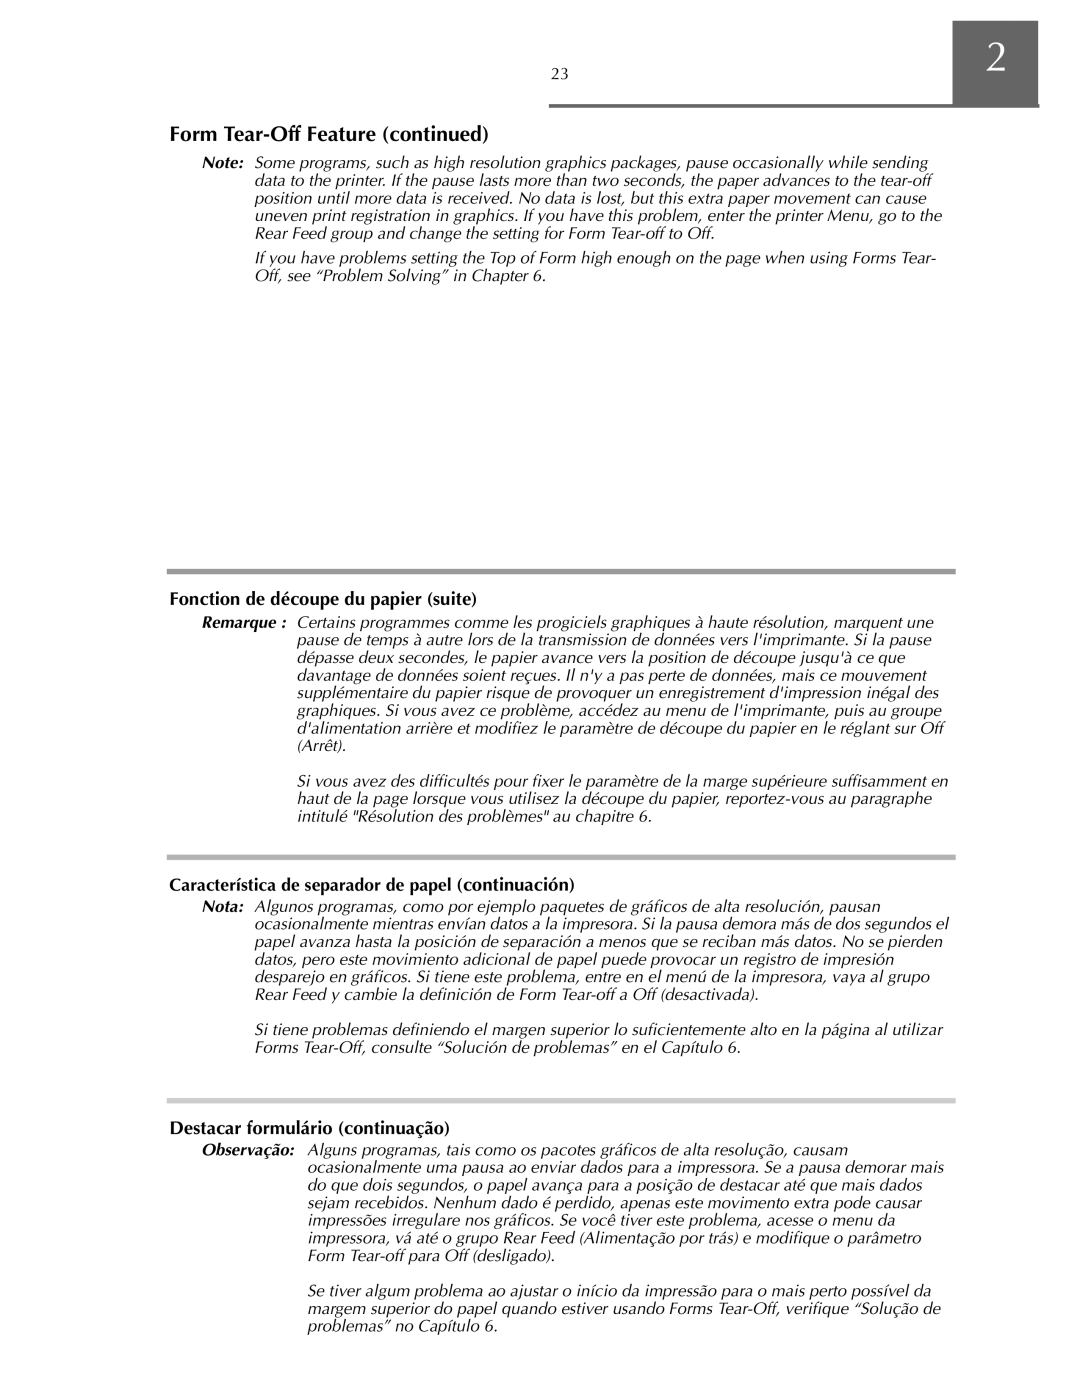 Oki ML590 manual Fonction de découpe du papier suite, Destacar formulário continuação 